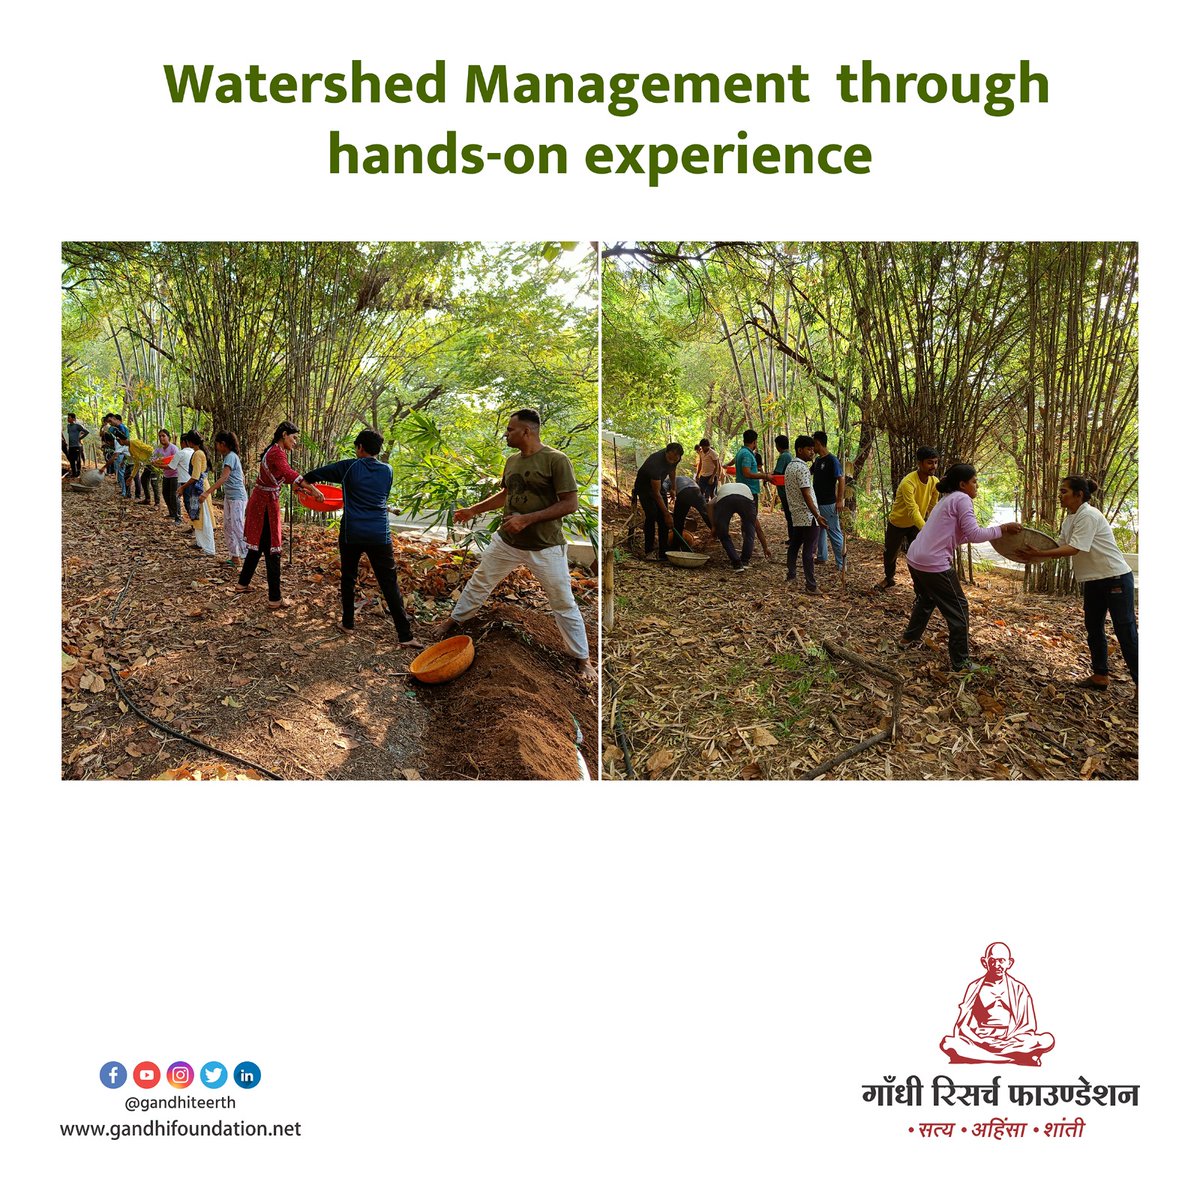 #water #watershed #gandhi #gandhiresearchfoundation #gandhiji #mkg #mkgandhi #mahatma #jainhillsjalgaon #watermanagement